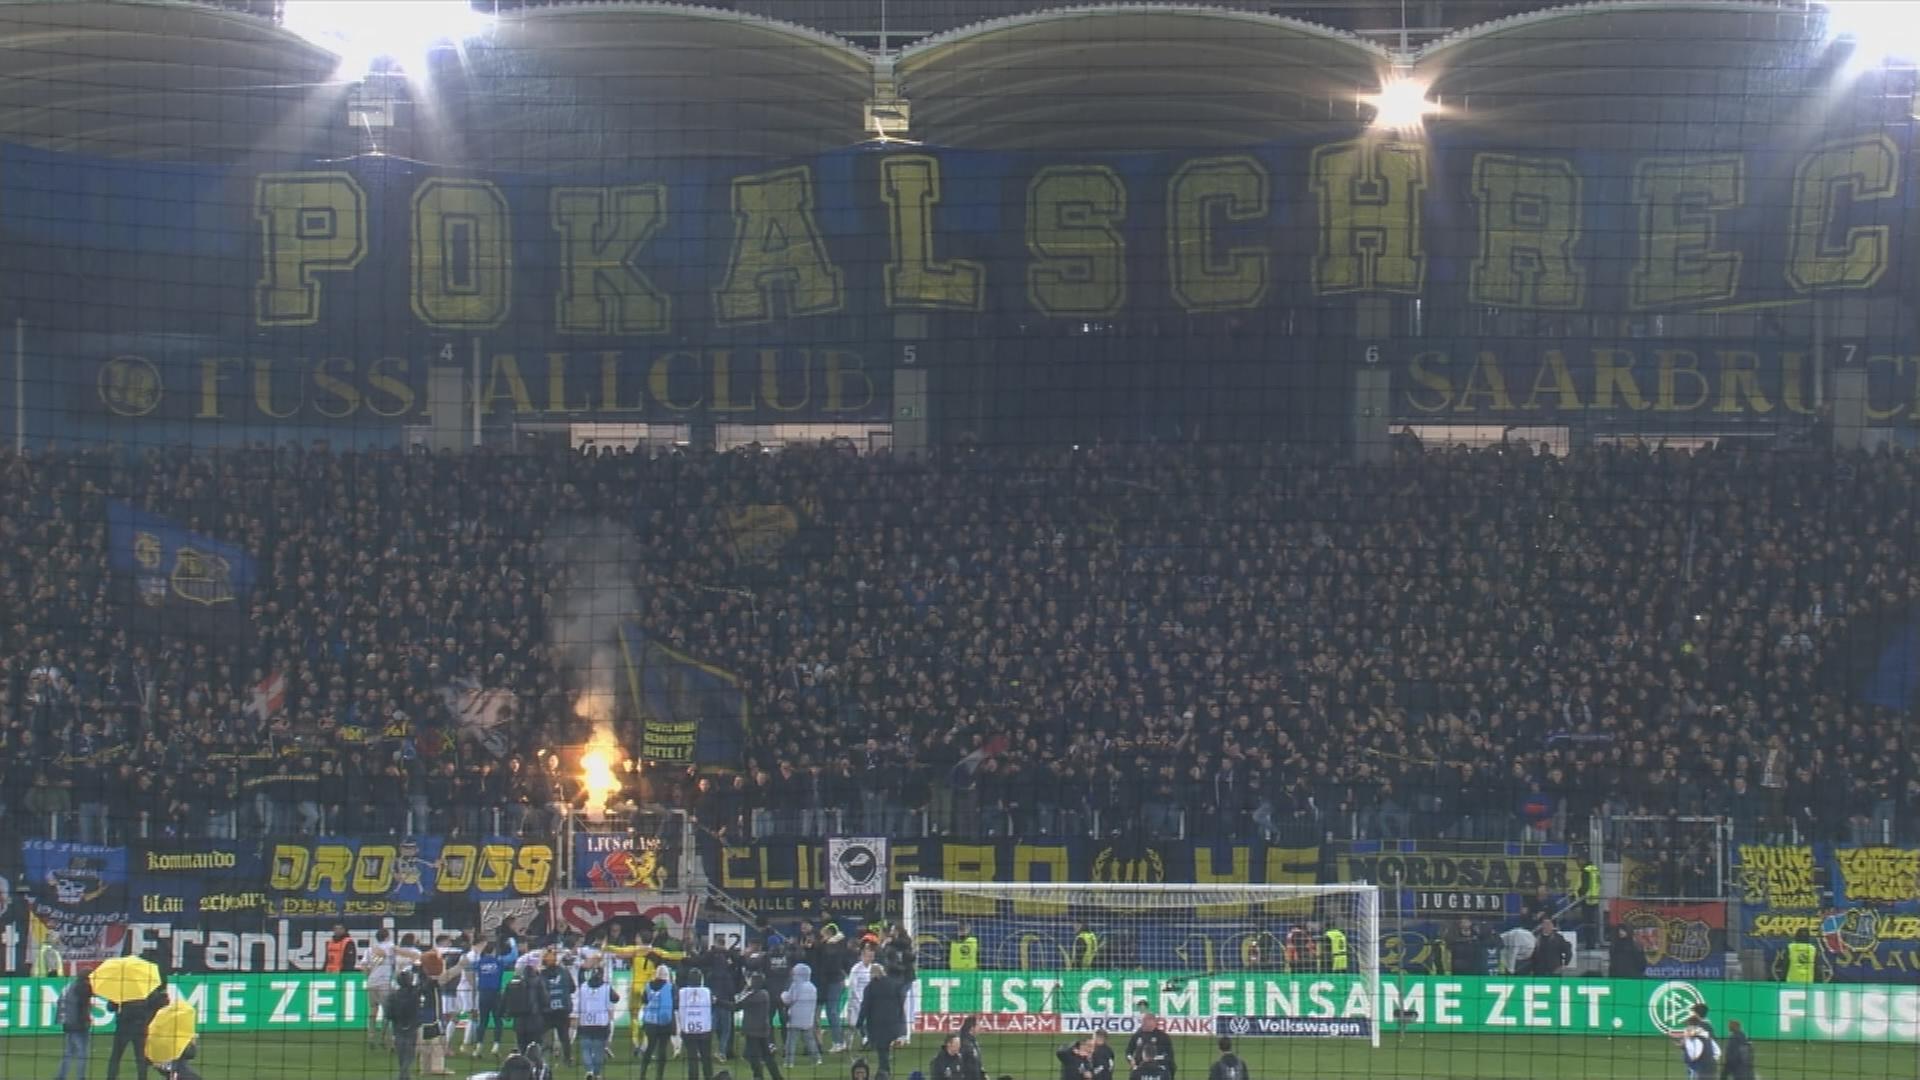 Fußballspiel Saarbrücken gegen Borussia Mönchengladbach im Stadion, Banner mit Aufschrift "Pokalschreck".